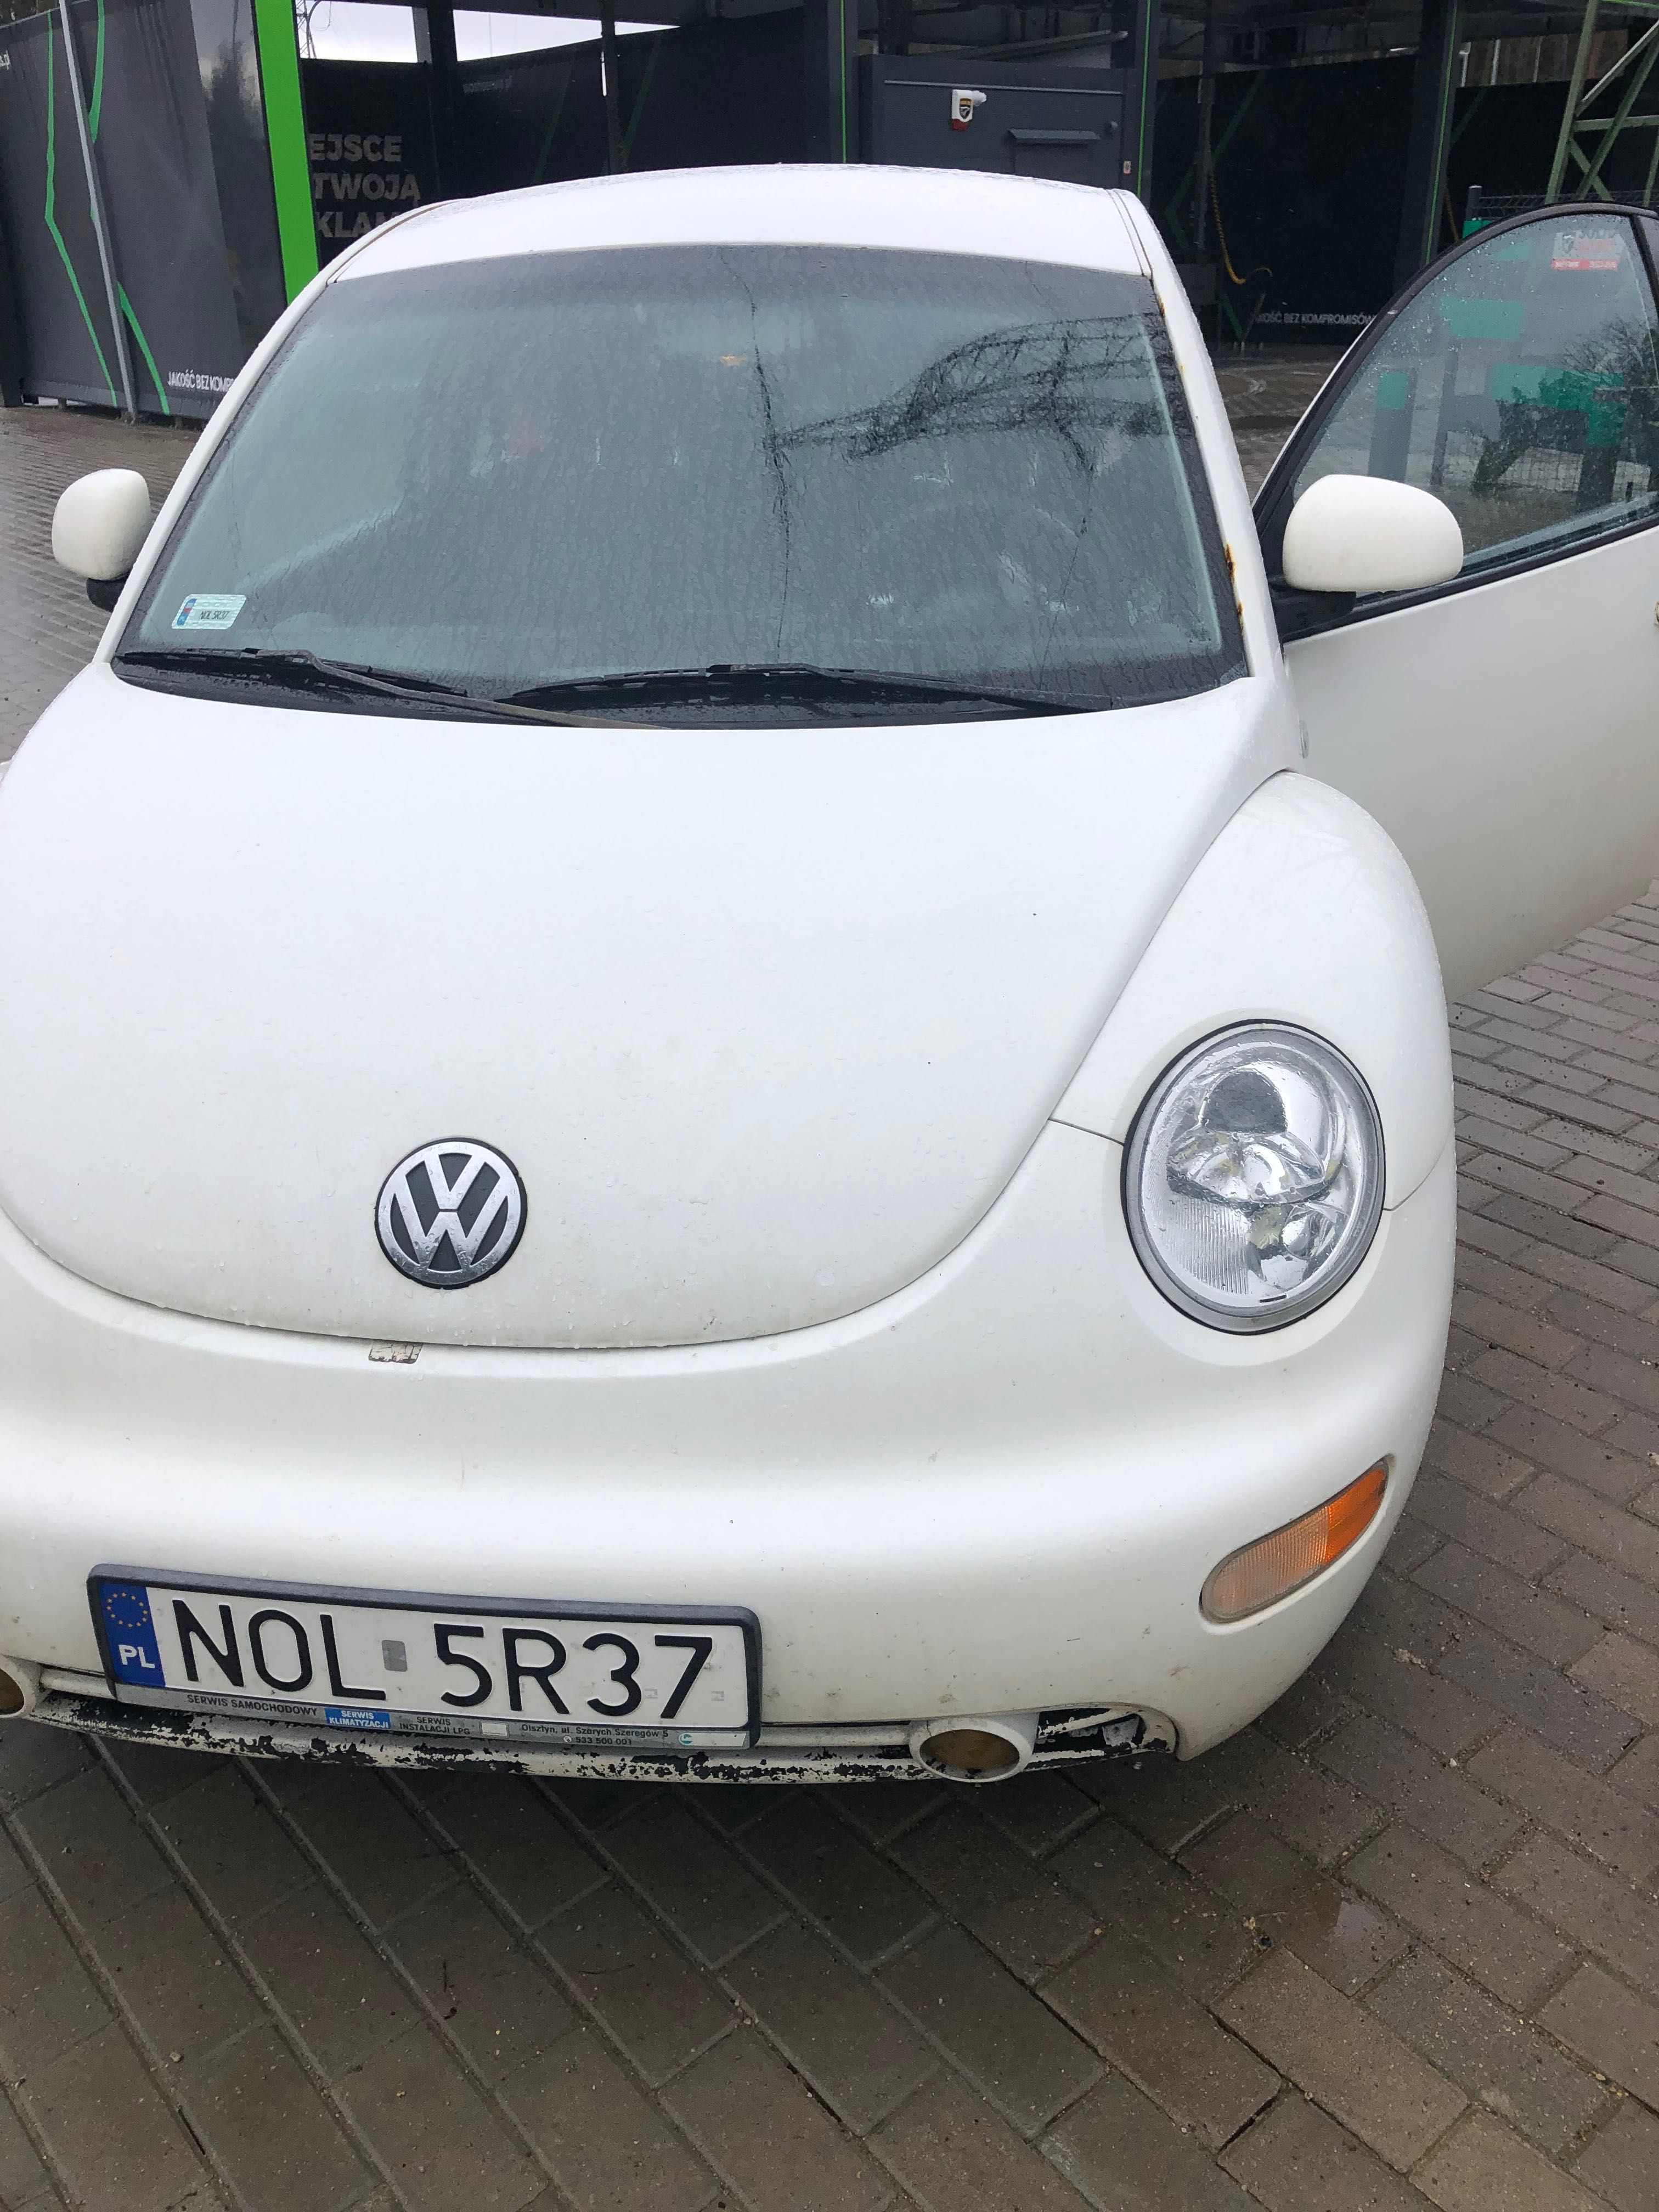 Volkswagen New Beetle 2 l paliwo + lpg